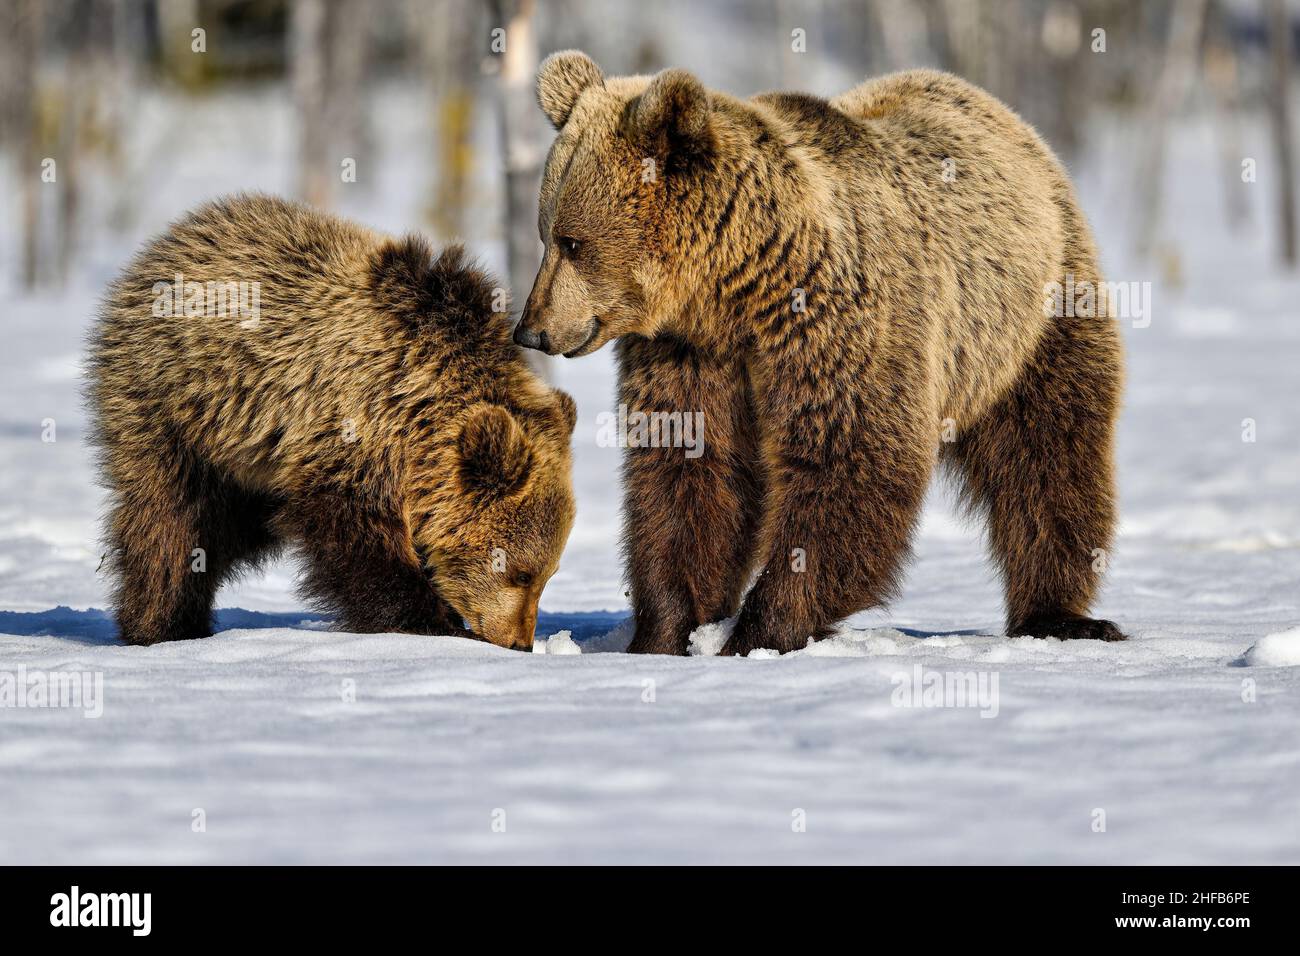 Die Bärenmutter lehrt das Junge, unter Schnee und Eis nach Nahrung zu suchen Stockfoto